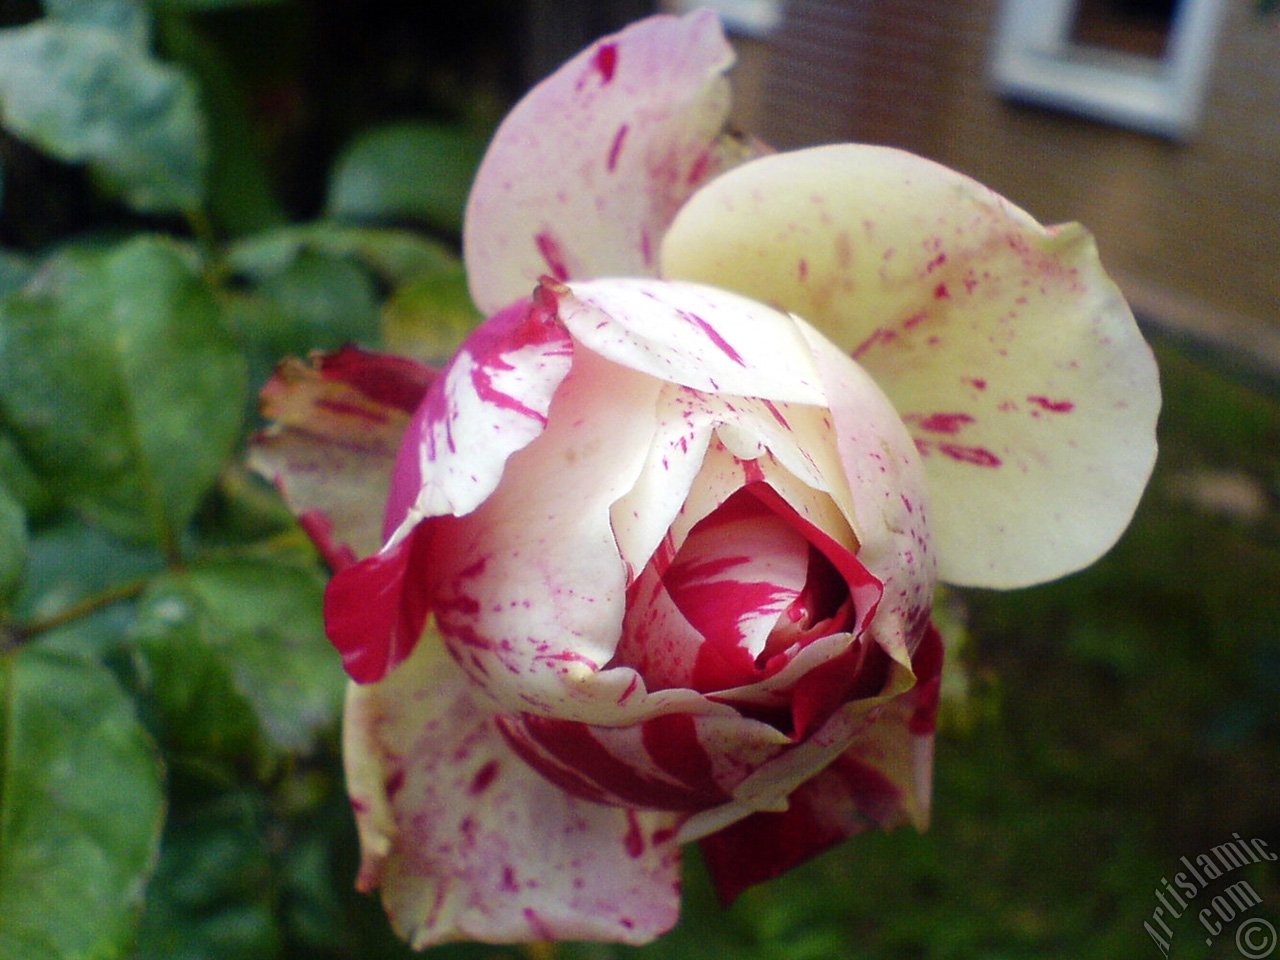 Variegated (mottled) rose photo.
